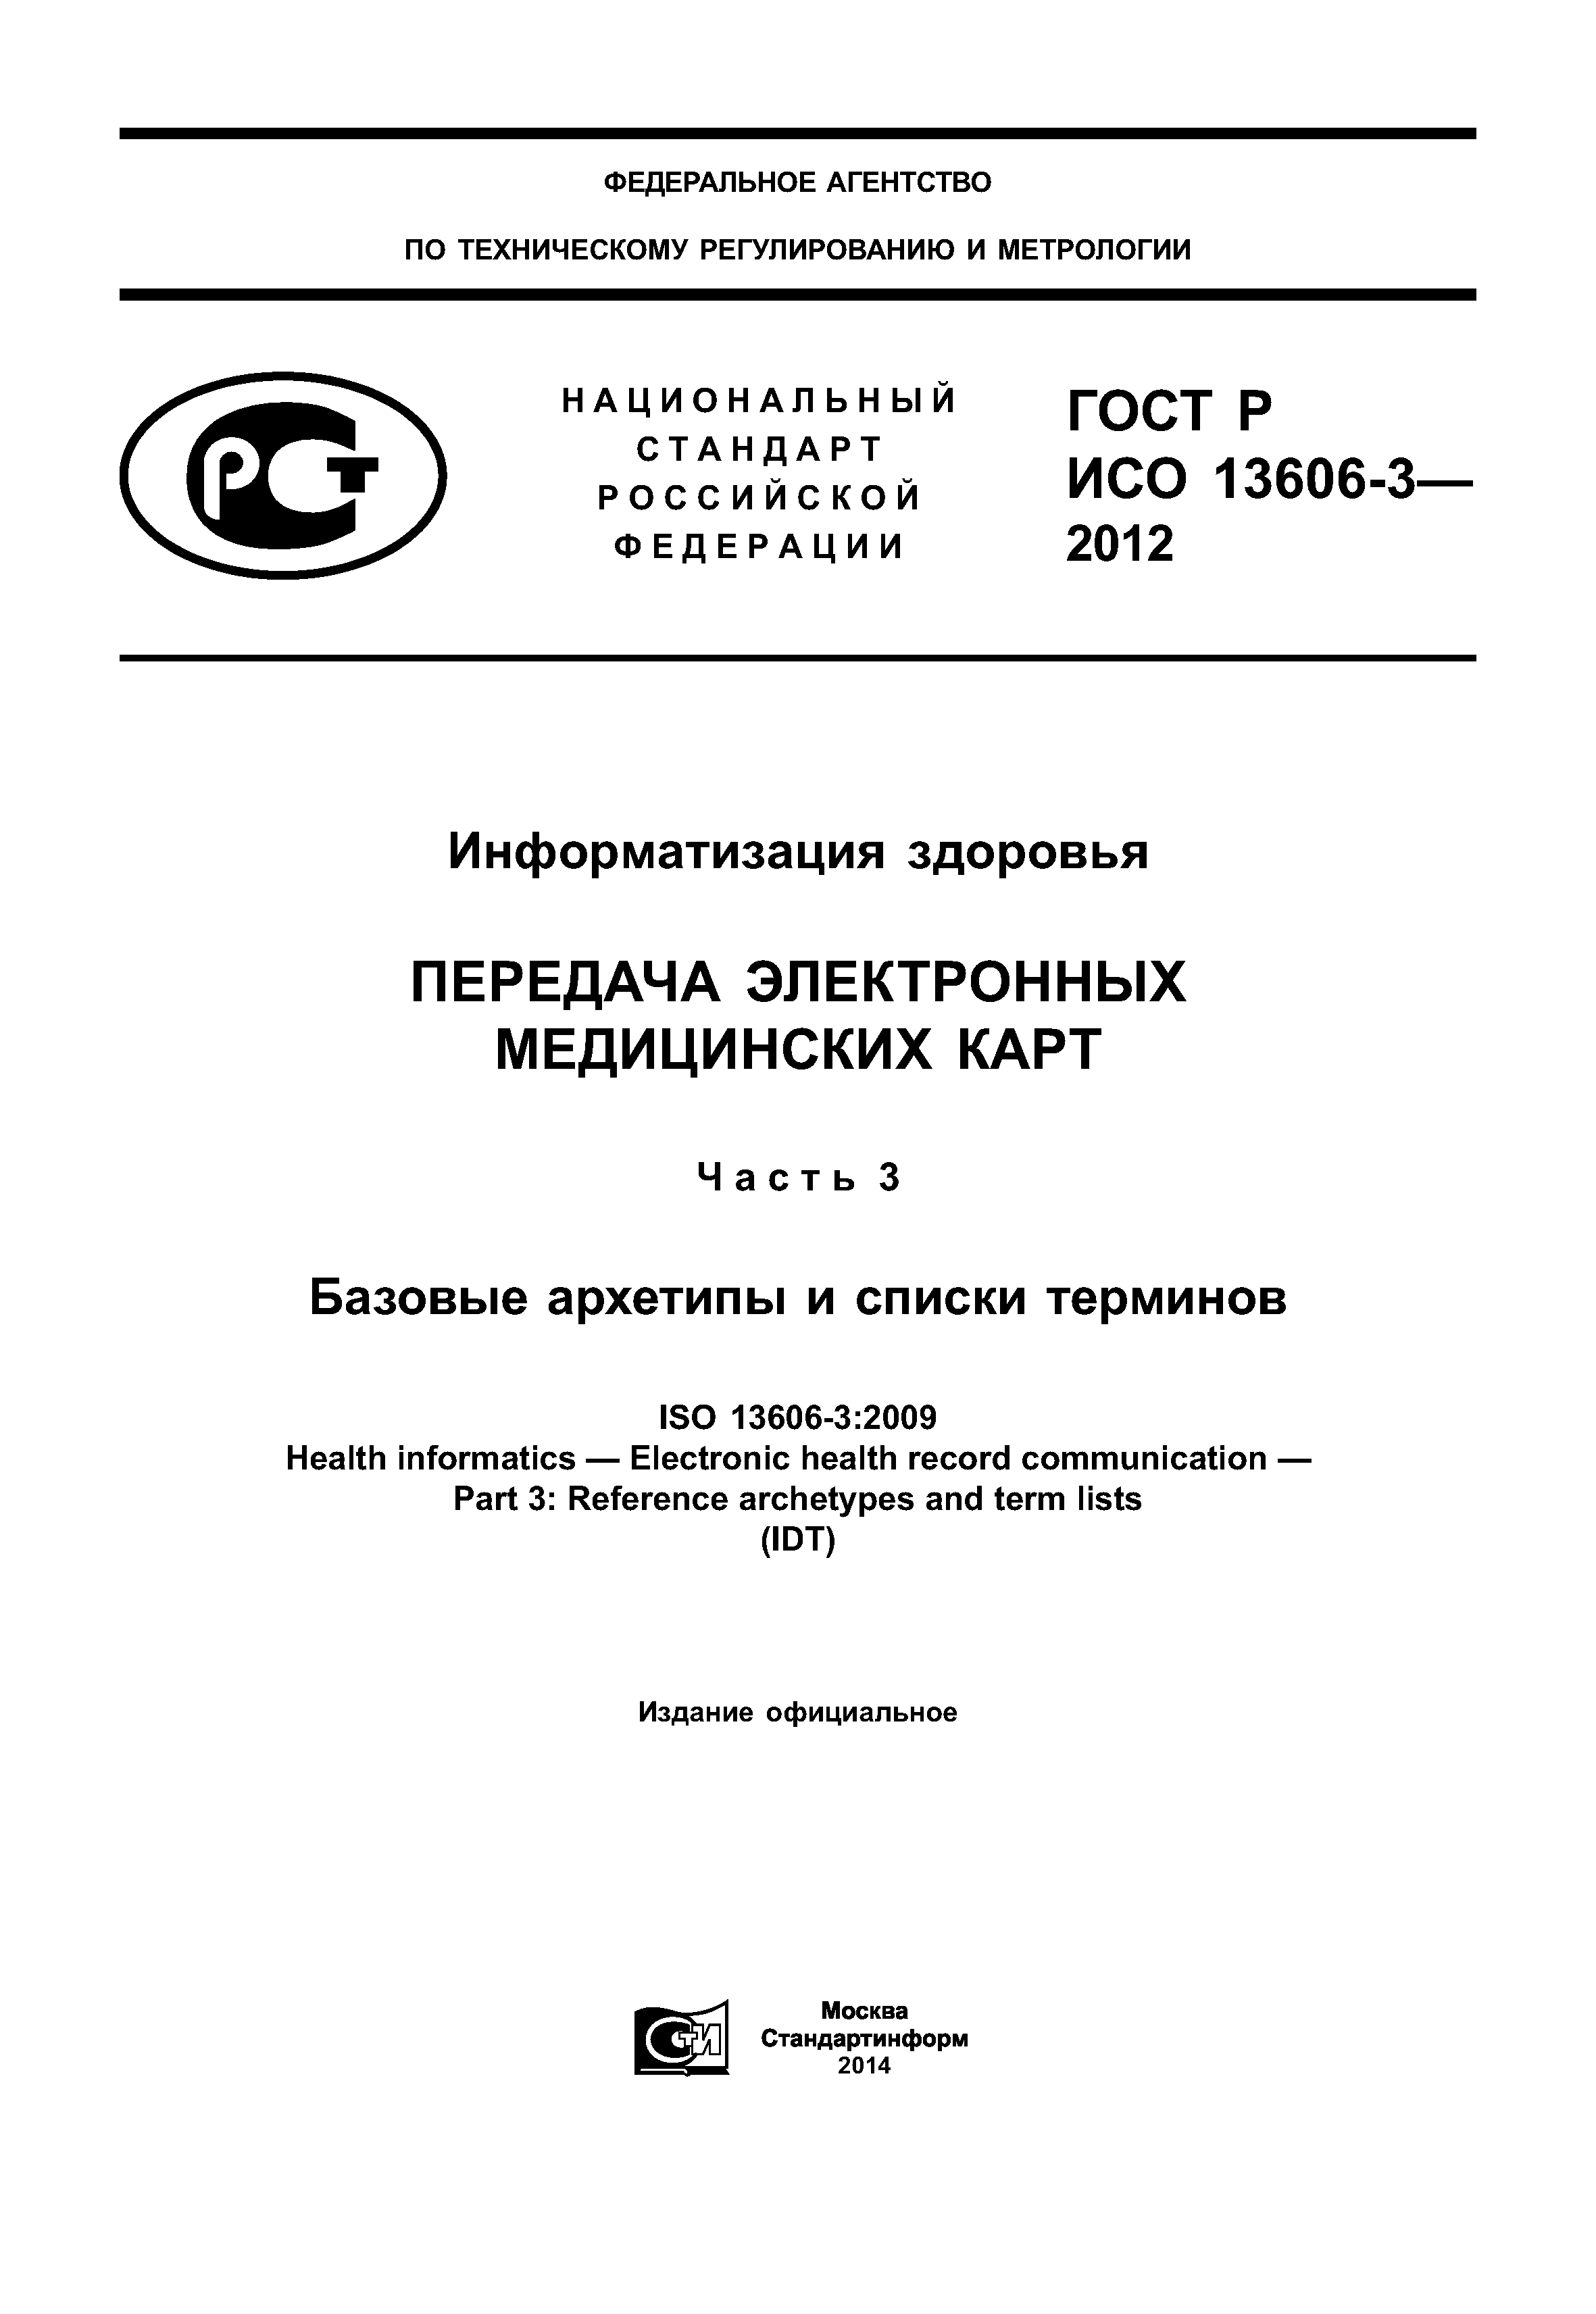 ГОСТ Р ИСО 13606-3-2012